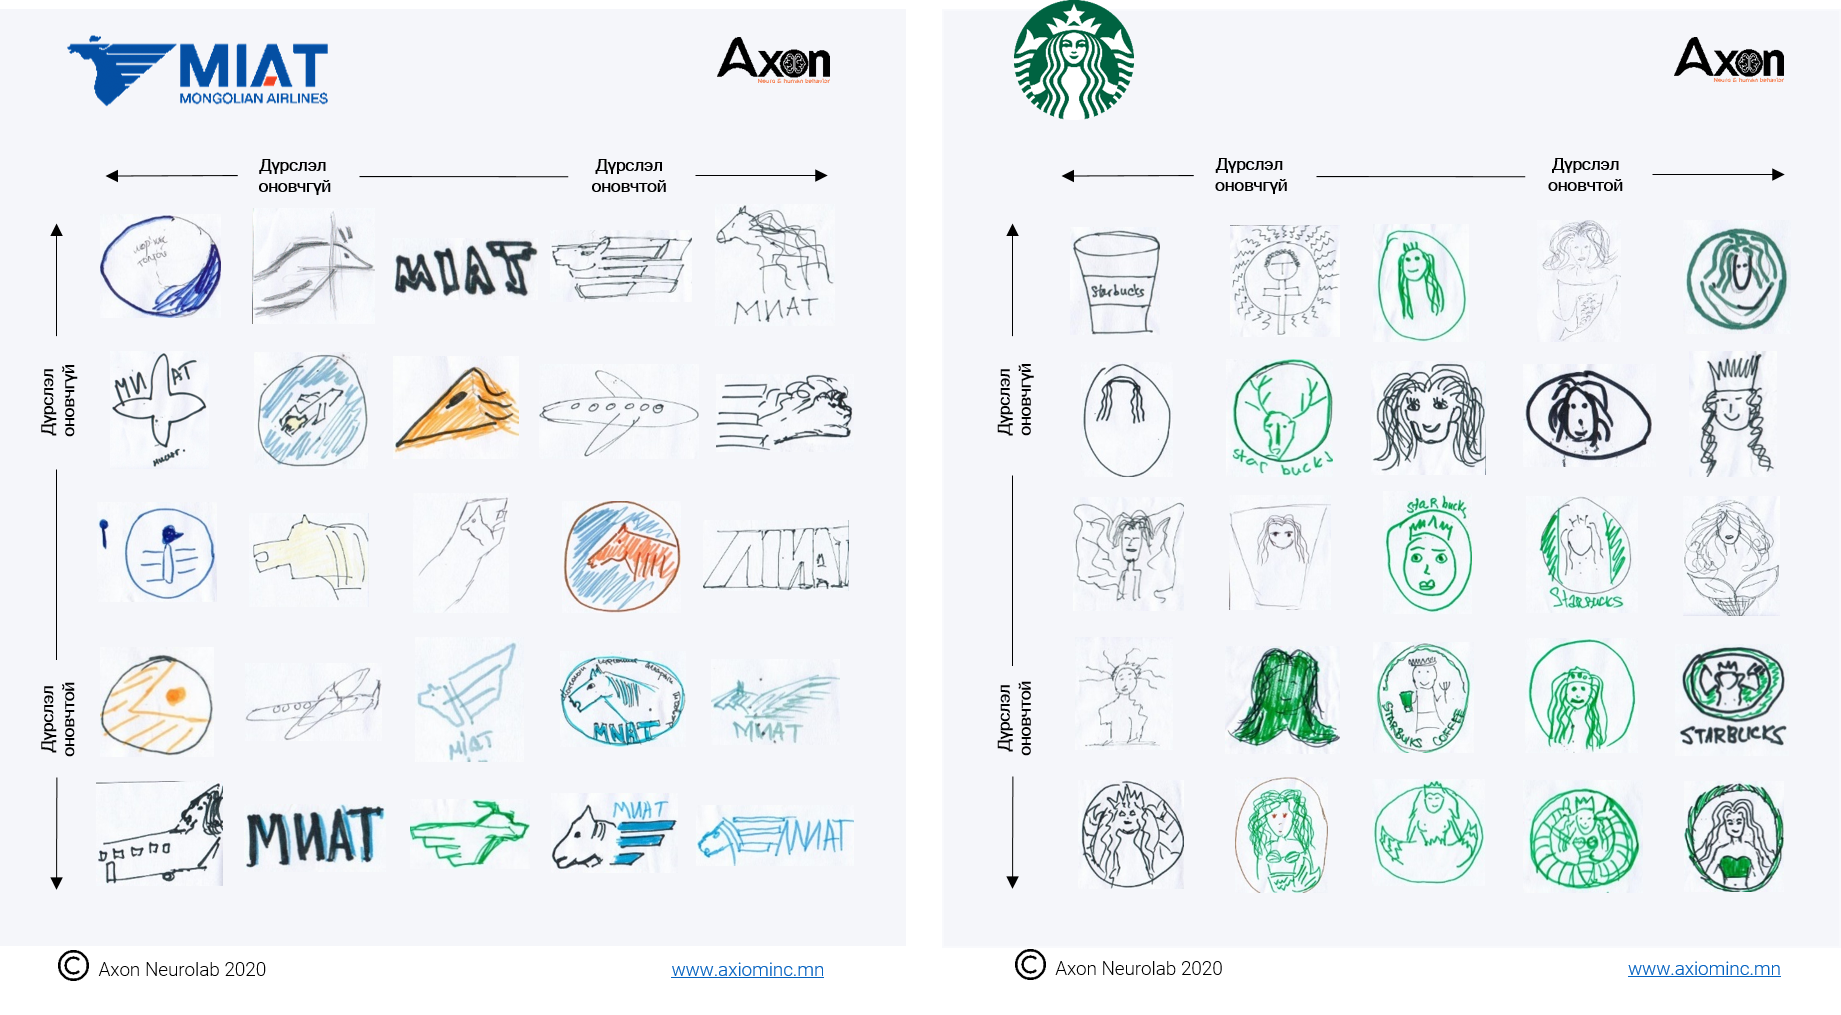 Хэрэглэгчид танай брэндийн логог хэр сайн мэддэг вэ?